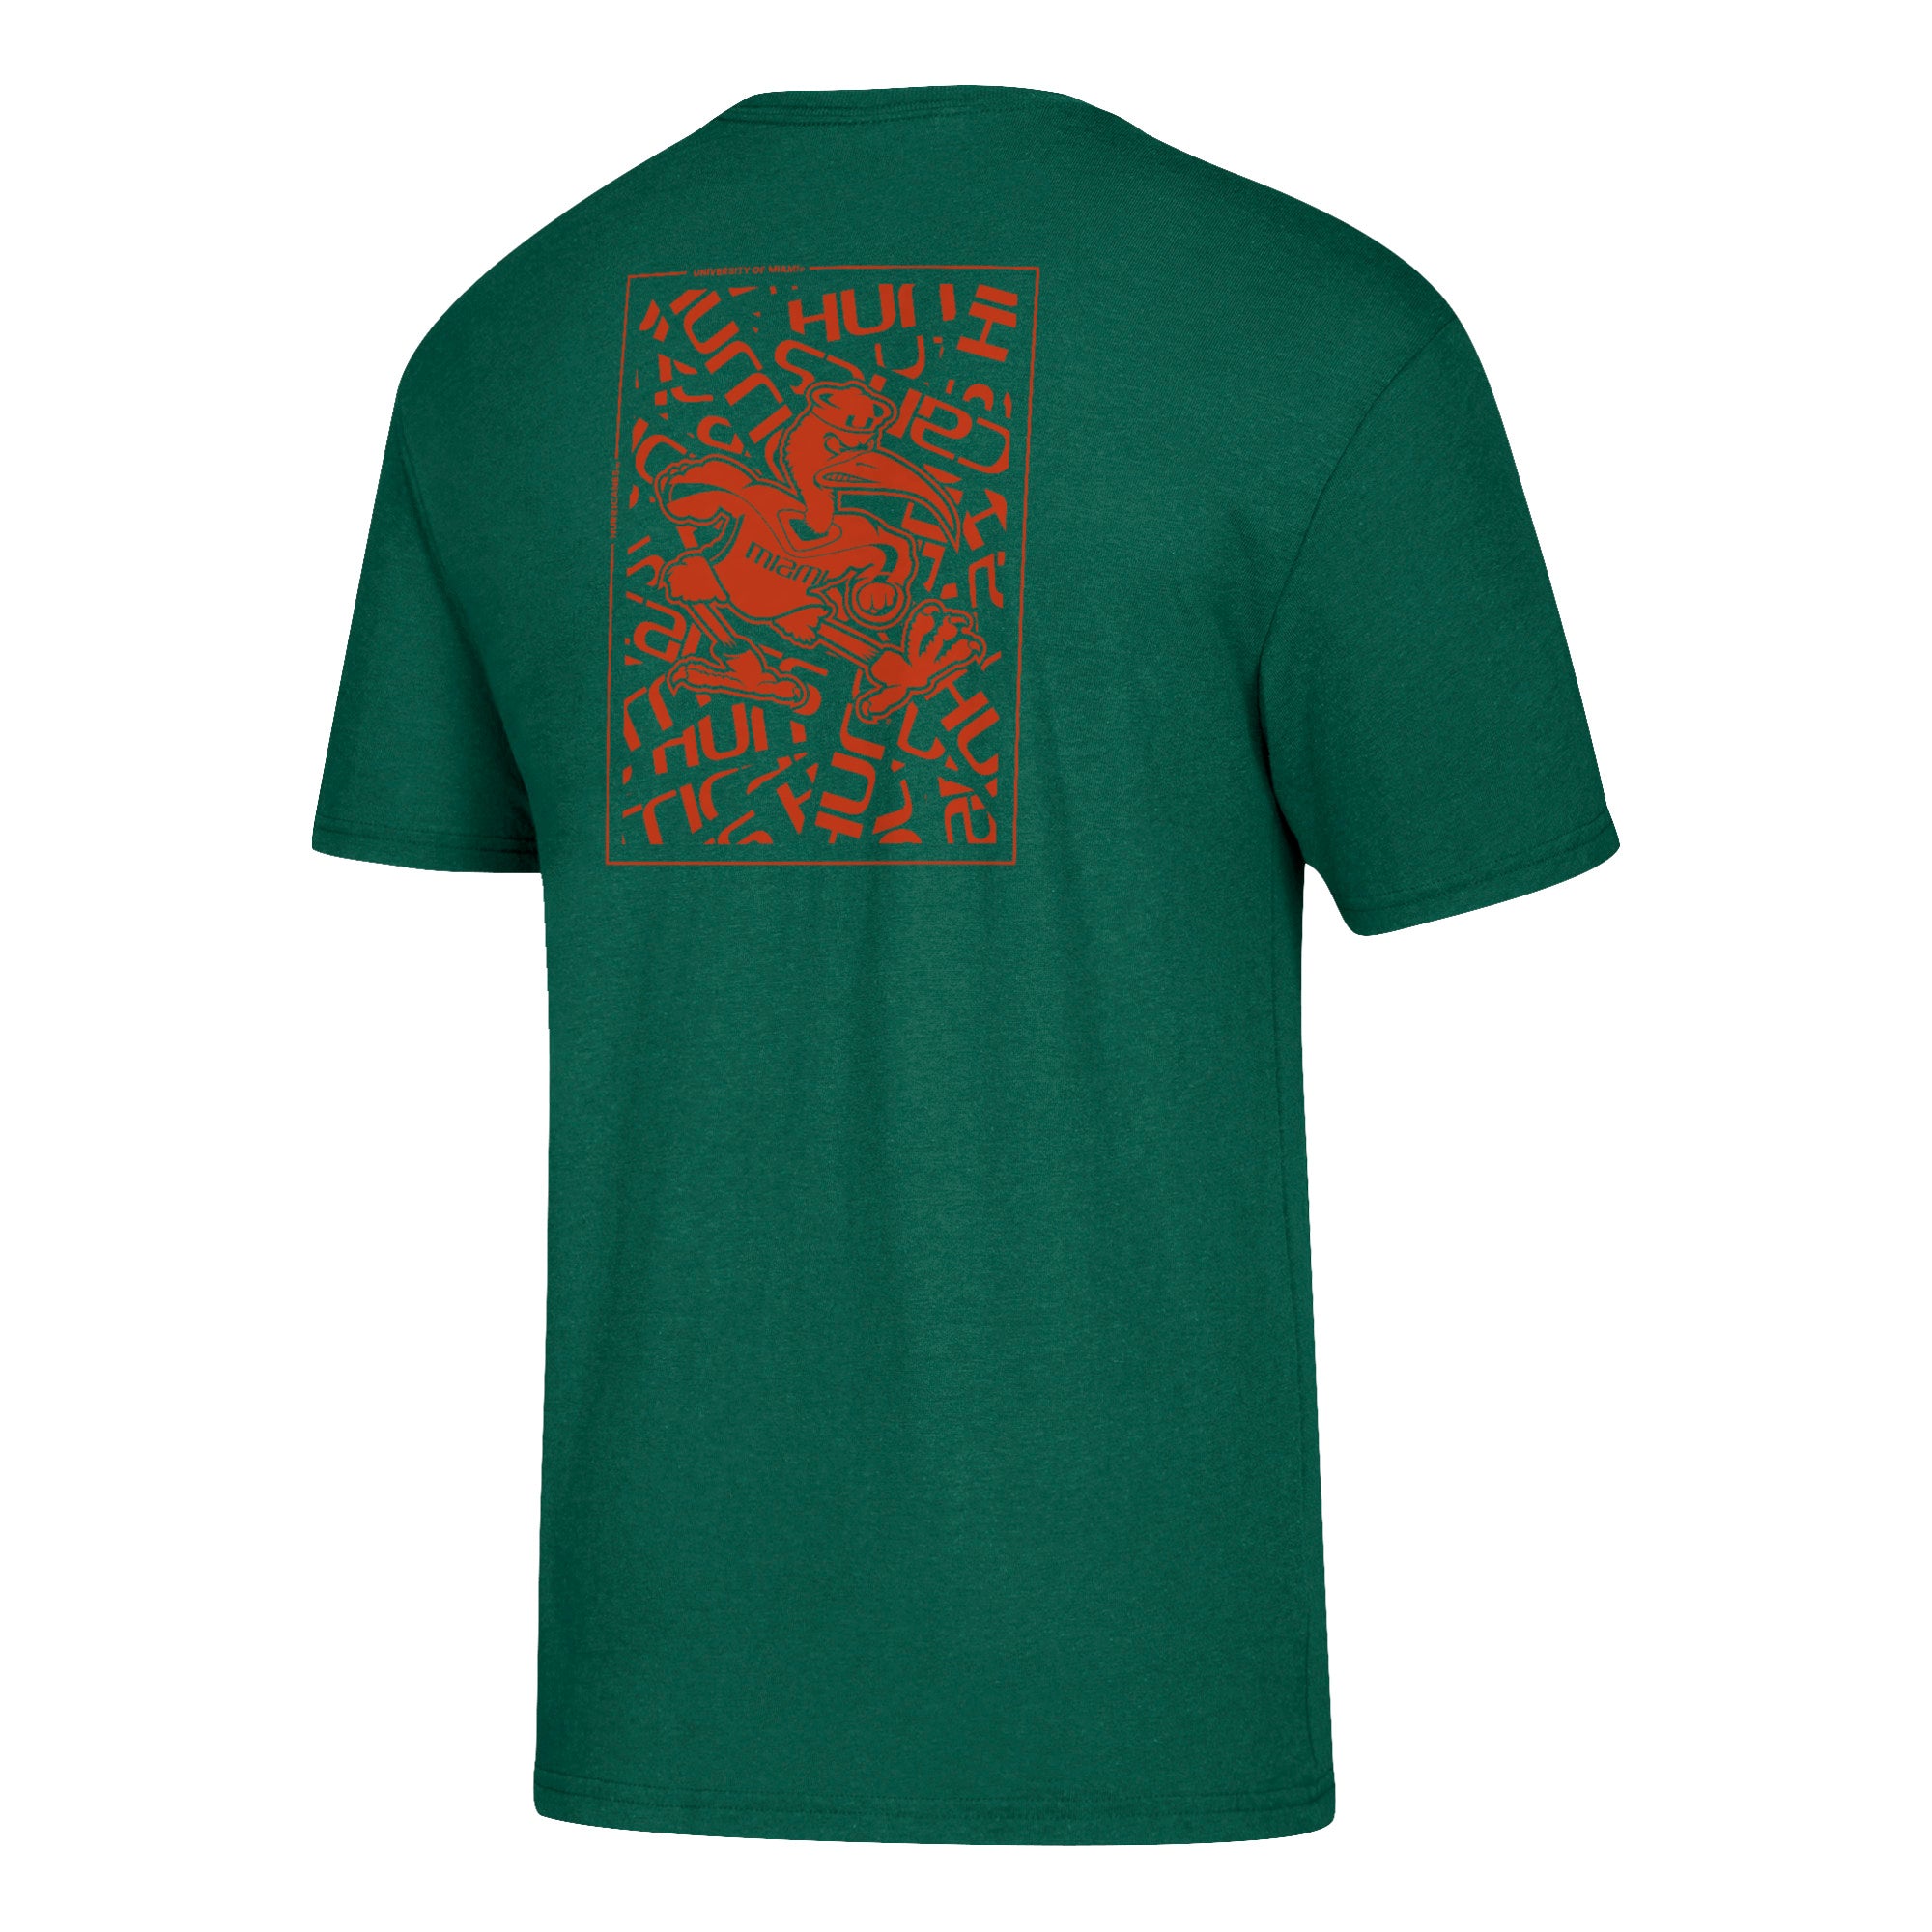 Miami Hurricanes adidas Sebastian Confetti Tri-Blend T-Shirt - Green